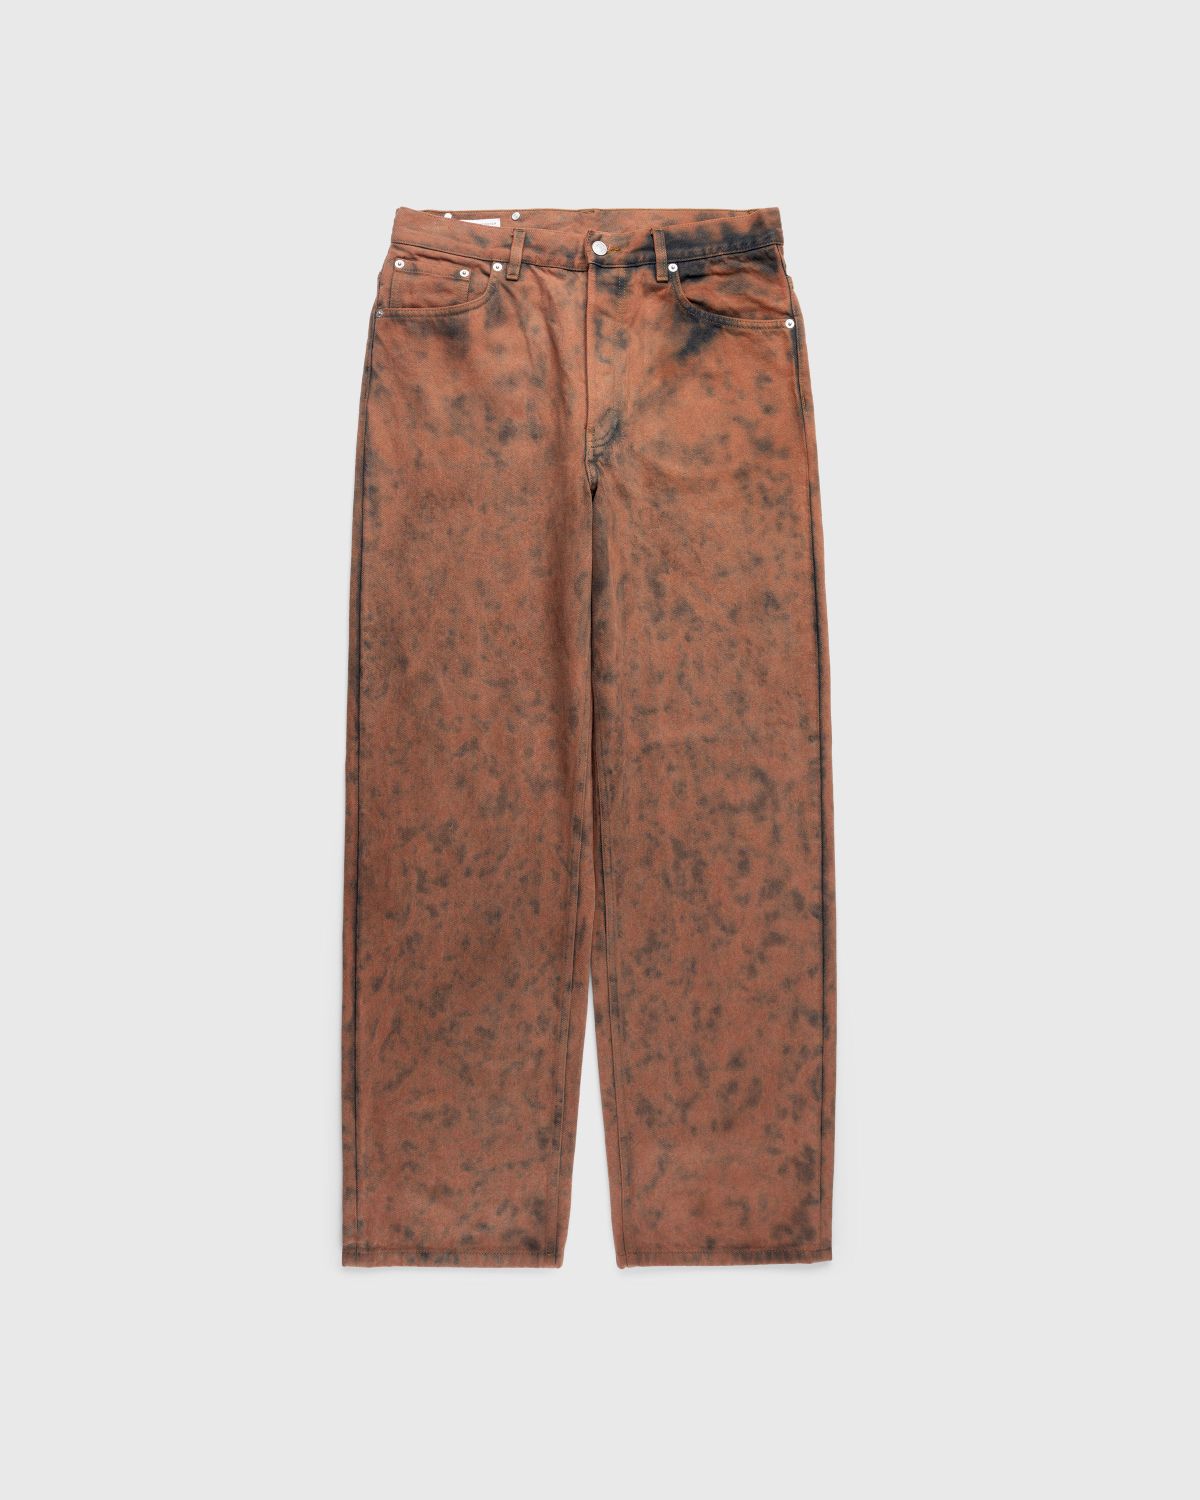 Dries van Noten – Pine Pants Choco - Pants - Brown - Image 1